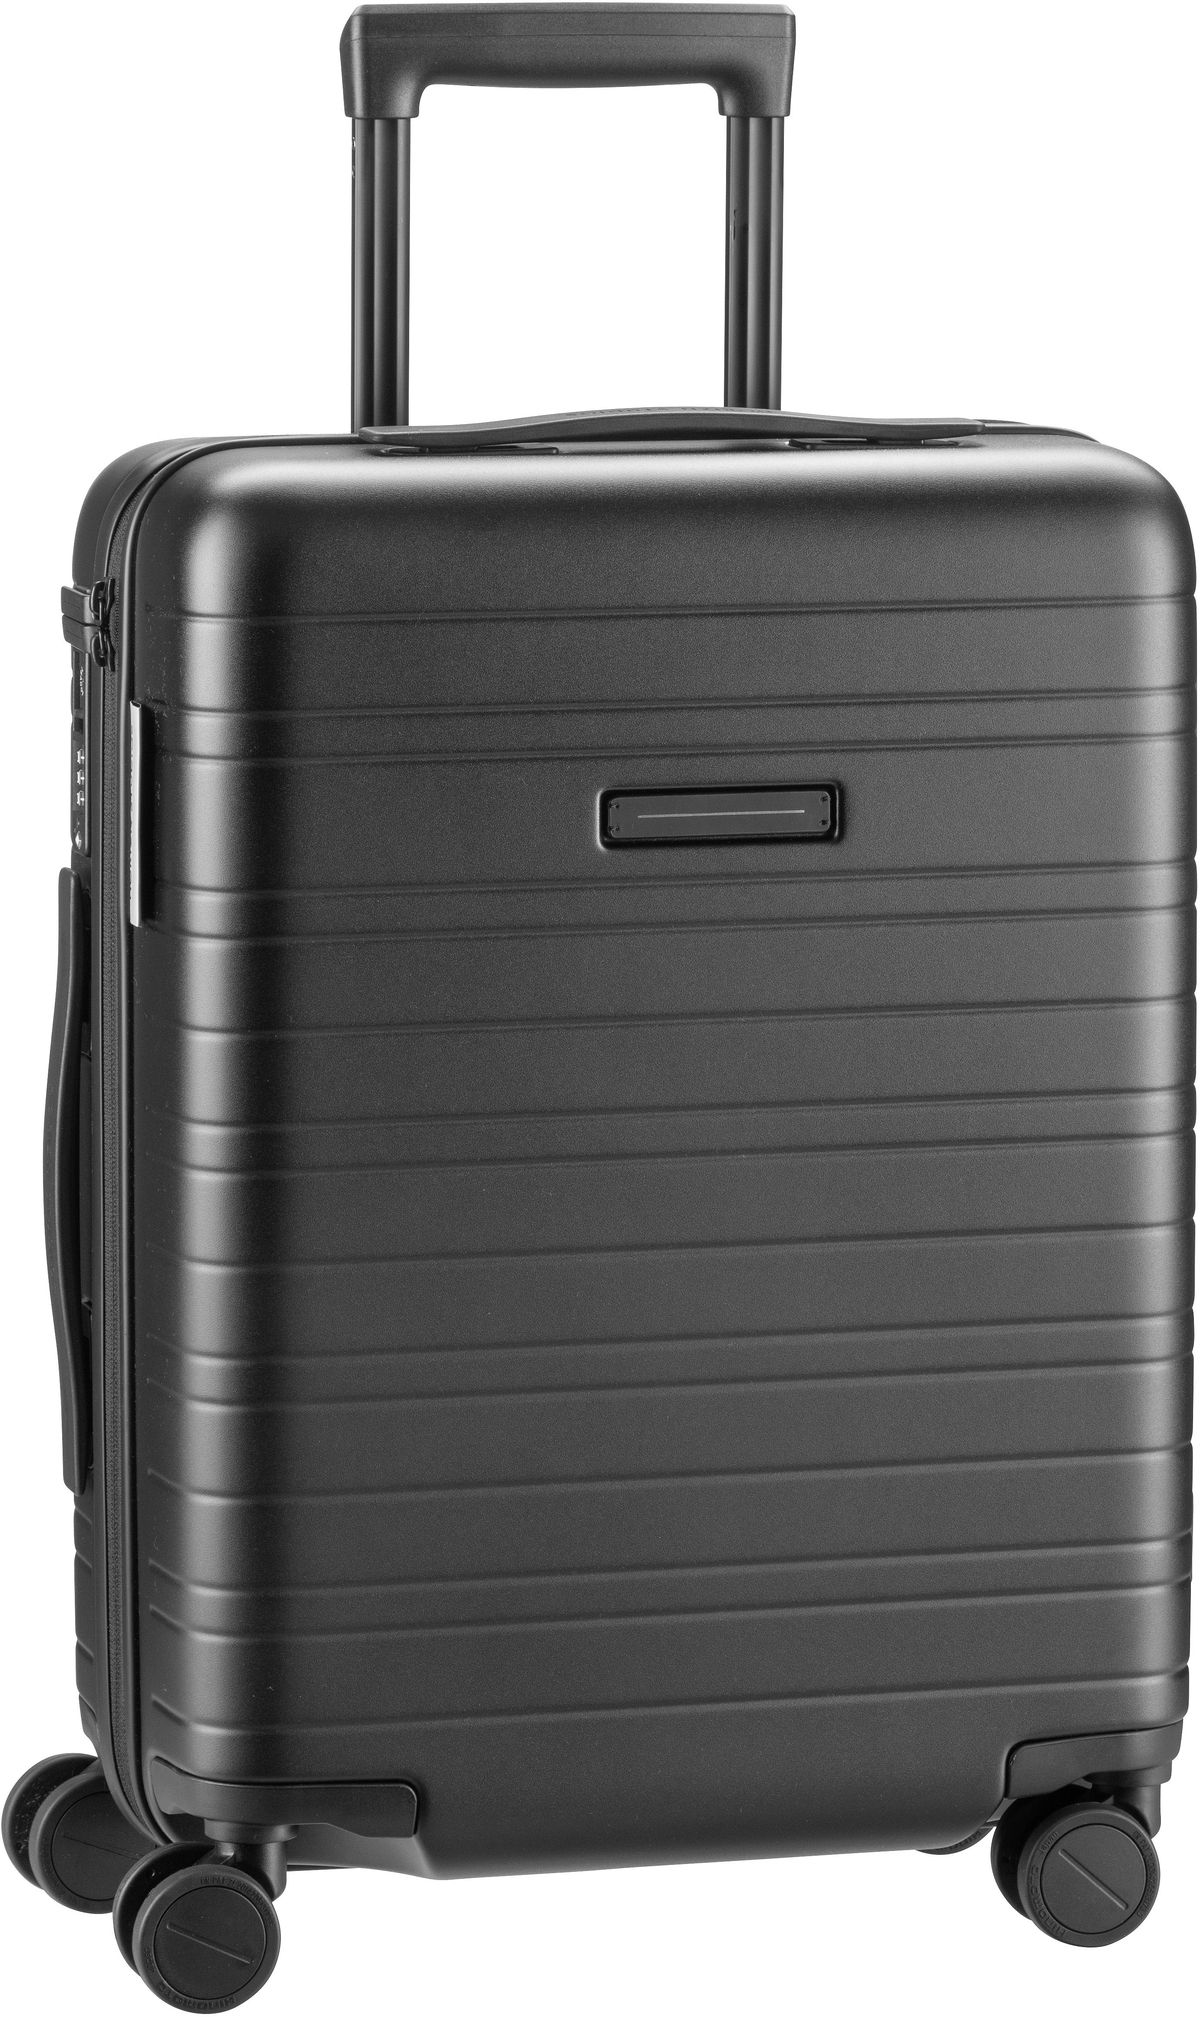 Horizn Studios  H5 Essential Cabin Luggage - Koffer mit 4 Rollen - Schwarz (All Black)